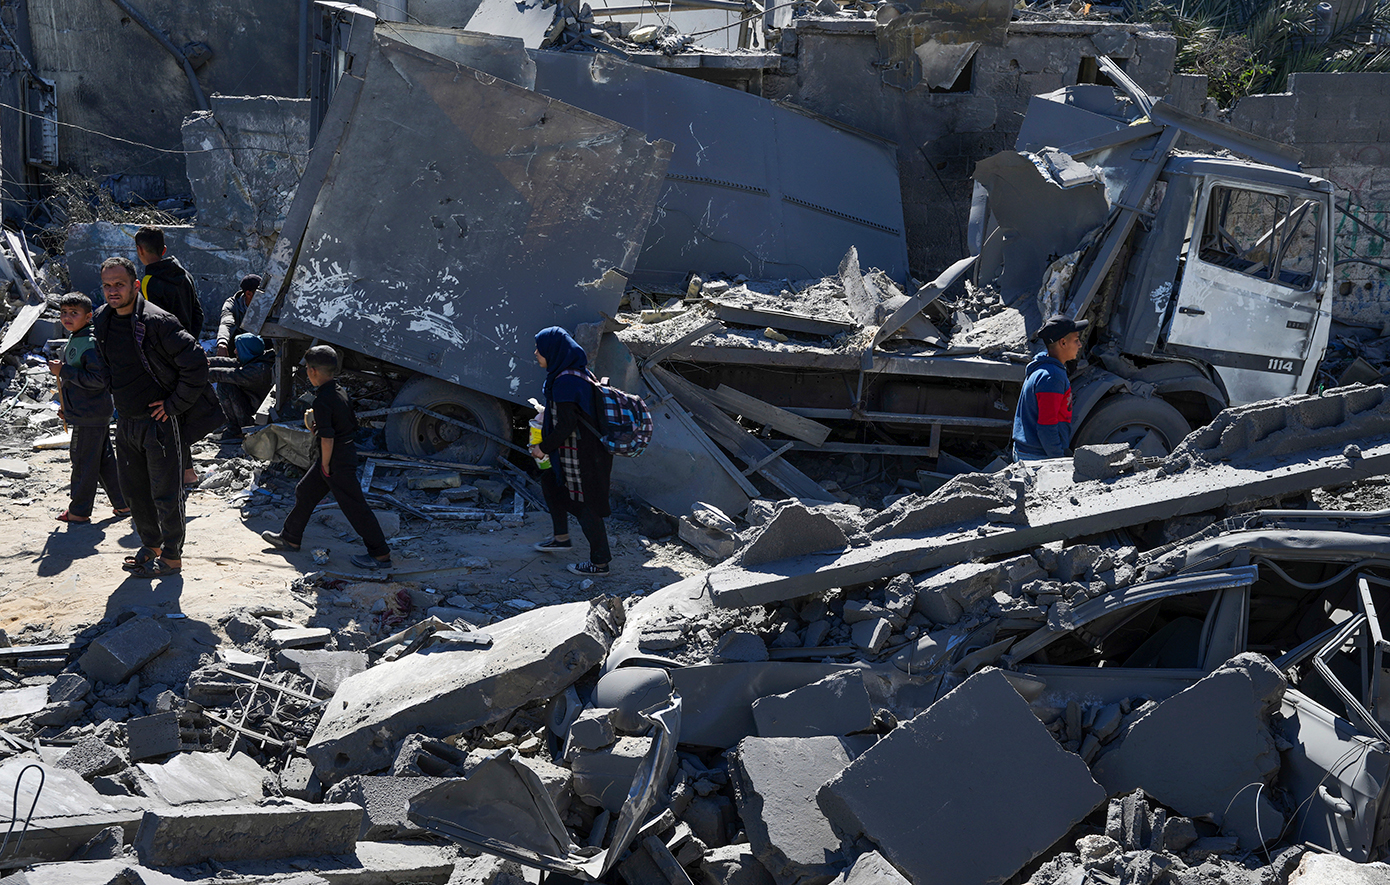 «Εξαιρετικά ανησυχητικό» το περιστατικό στη Γάζα, «απελπιστική η κατάσταση» λέει η Ουάσινγκτον